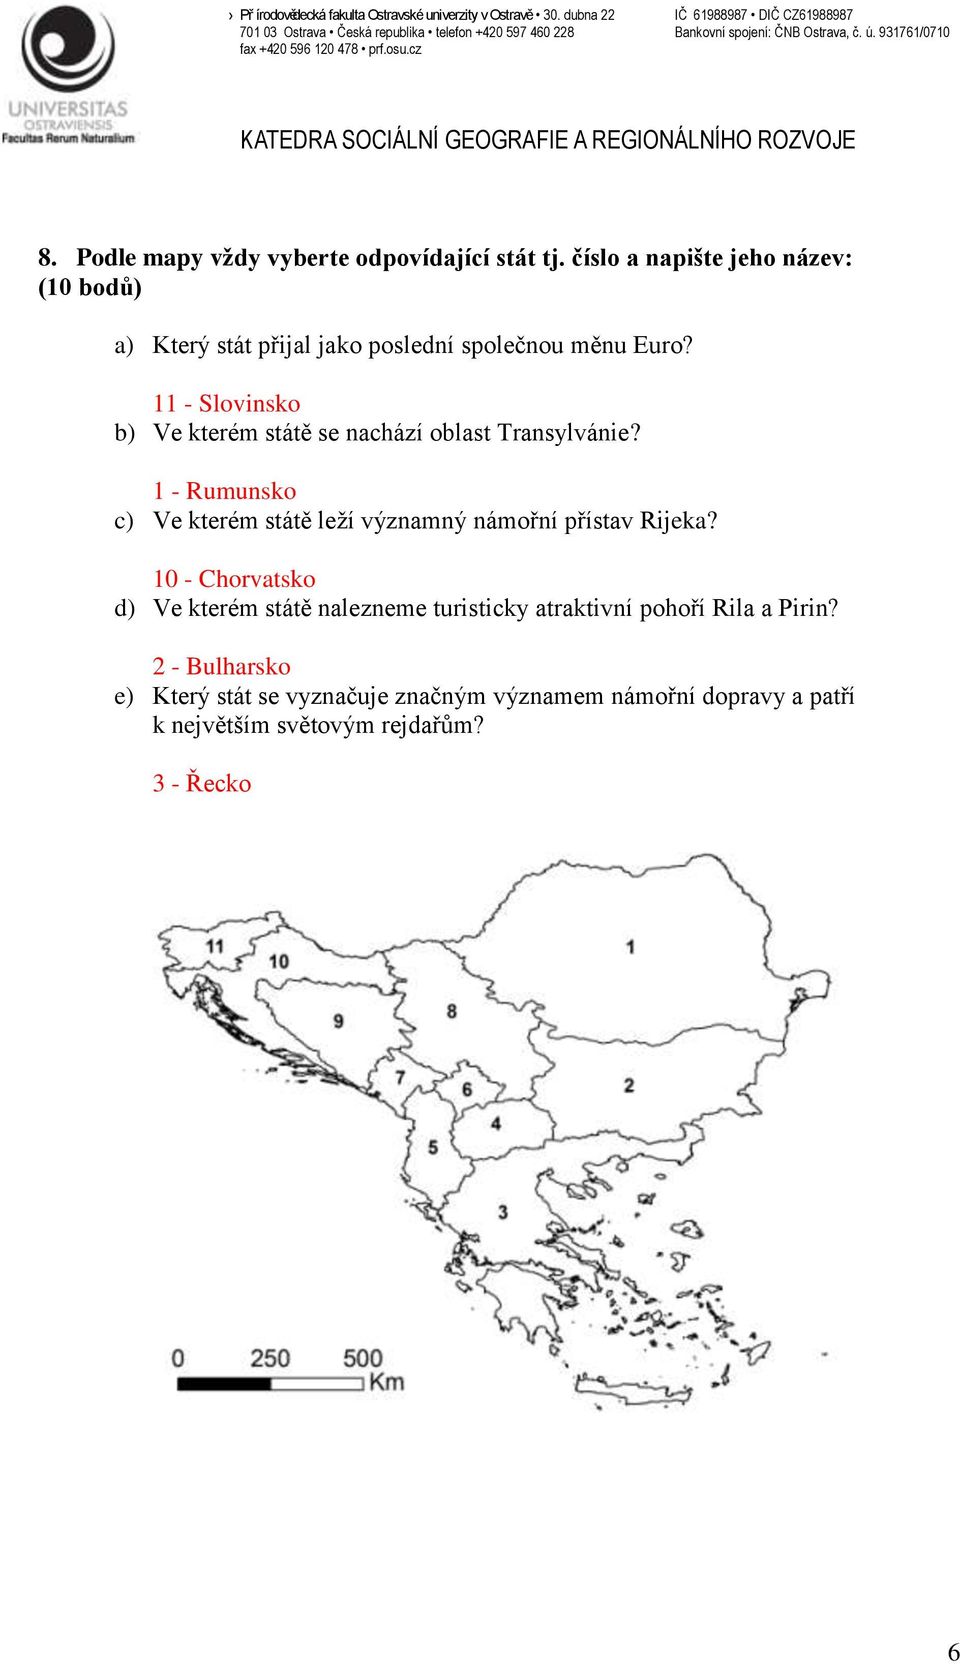 11 - Slovinsko b) Ve kterém státě se nachází oblast Transylvánie?